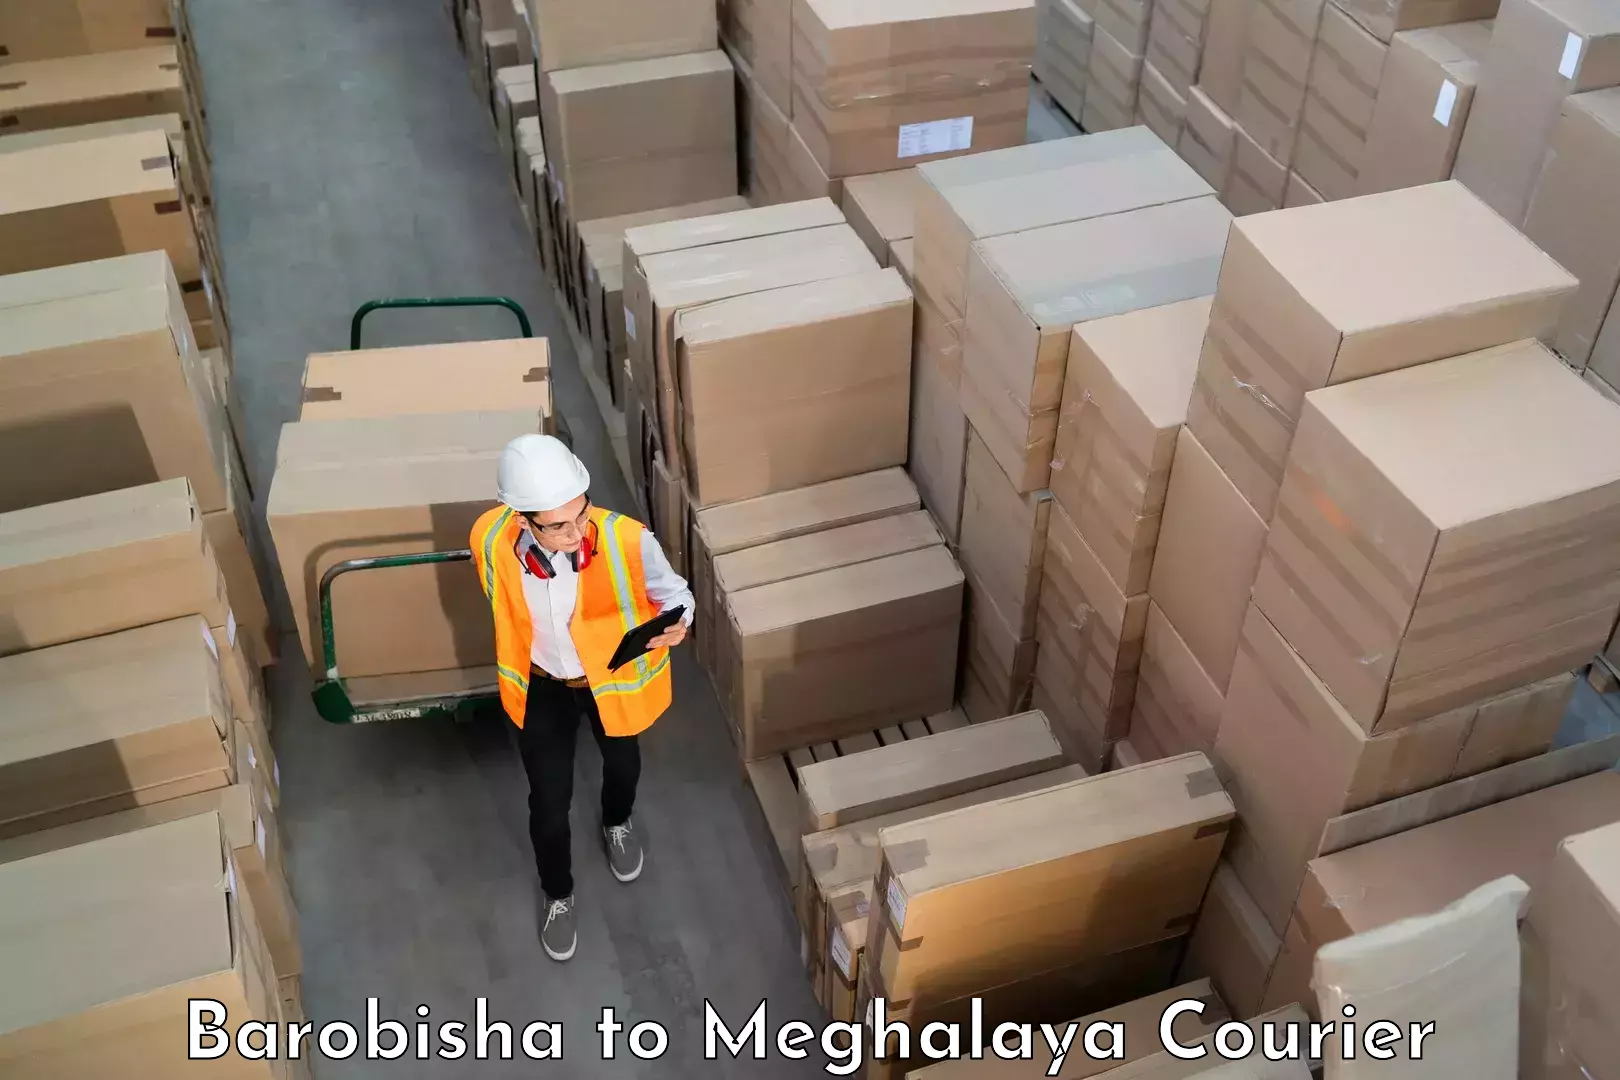 Luggage delivery network Barobisha to Meghalaya